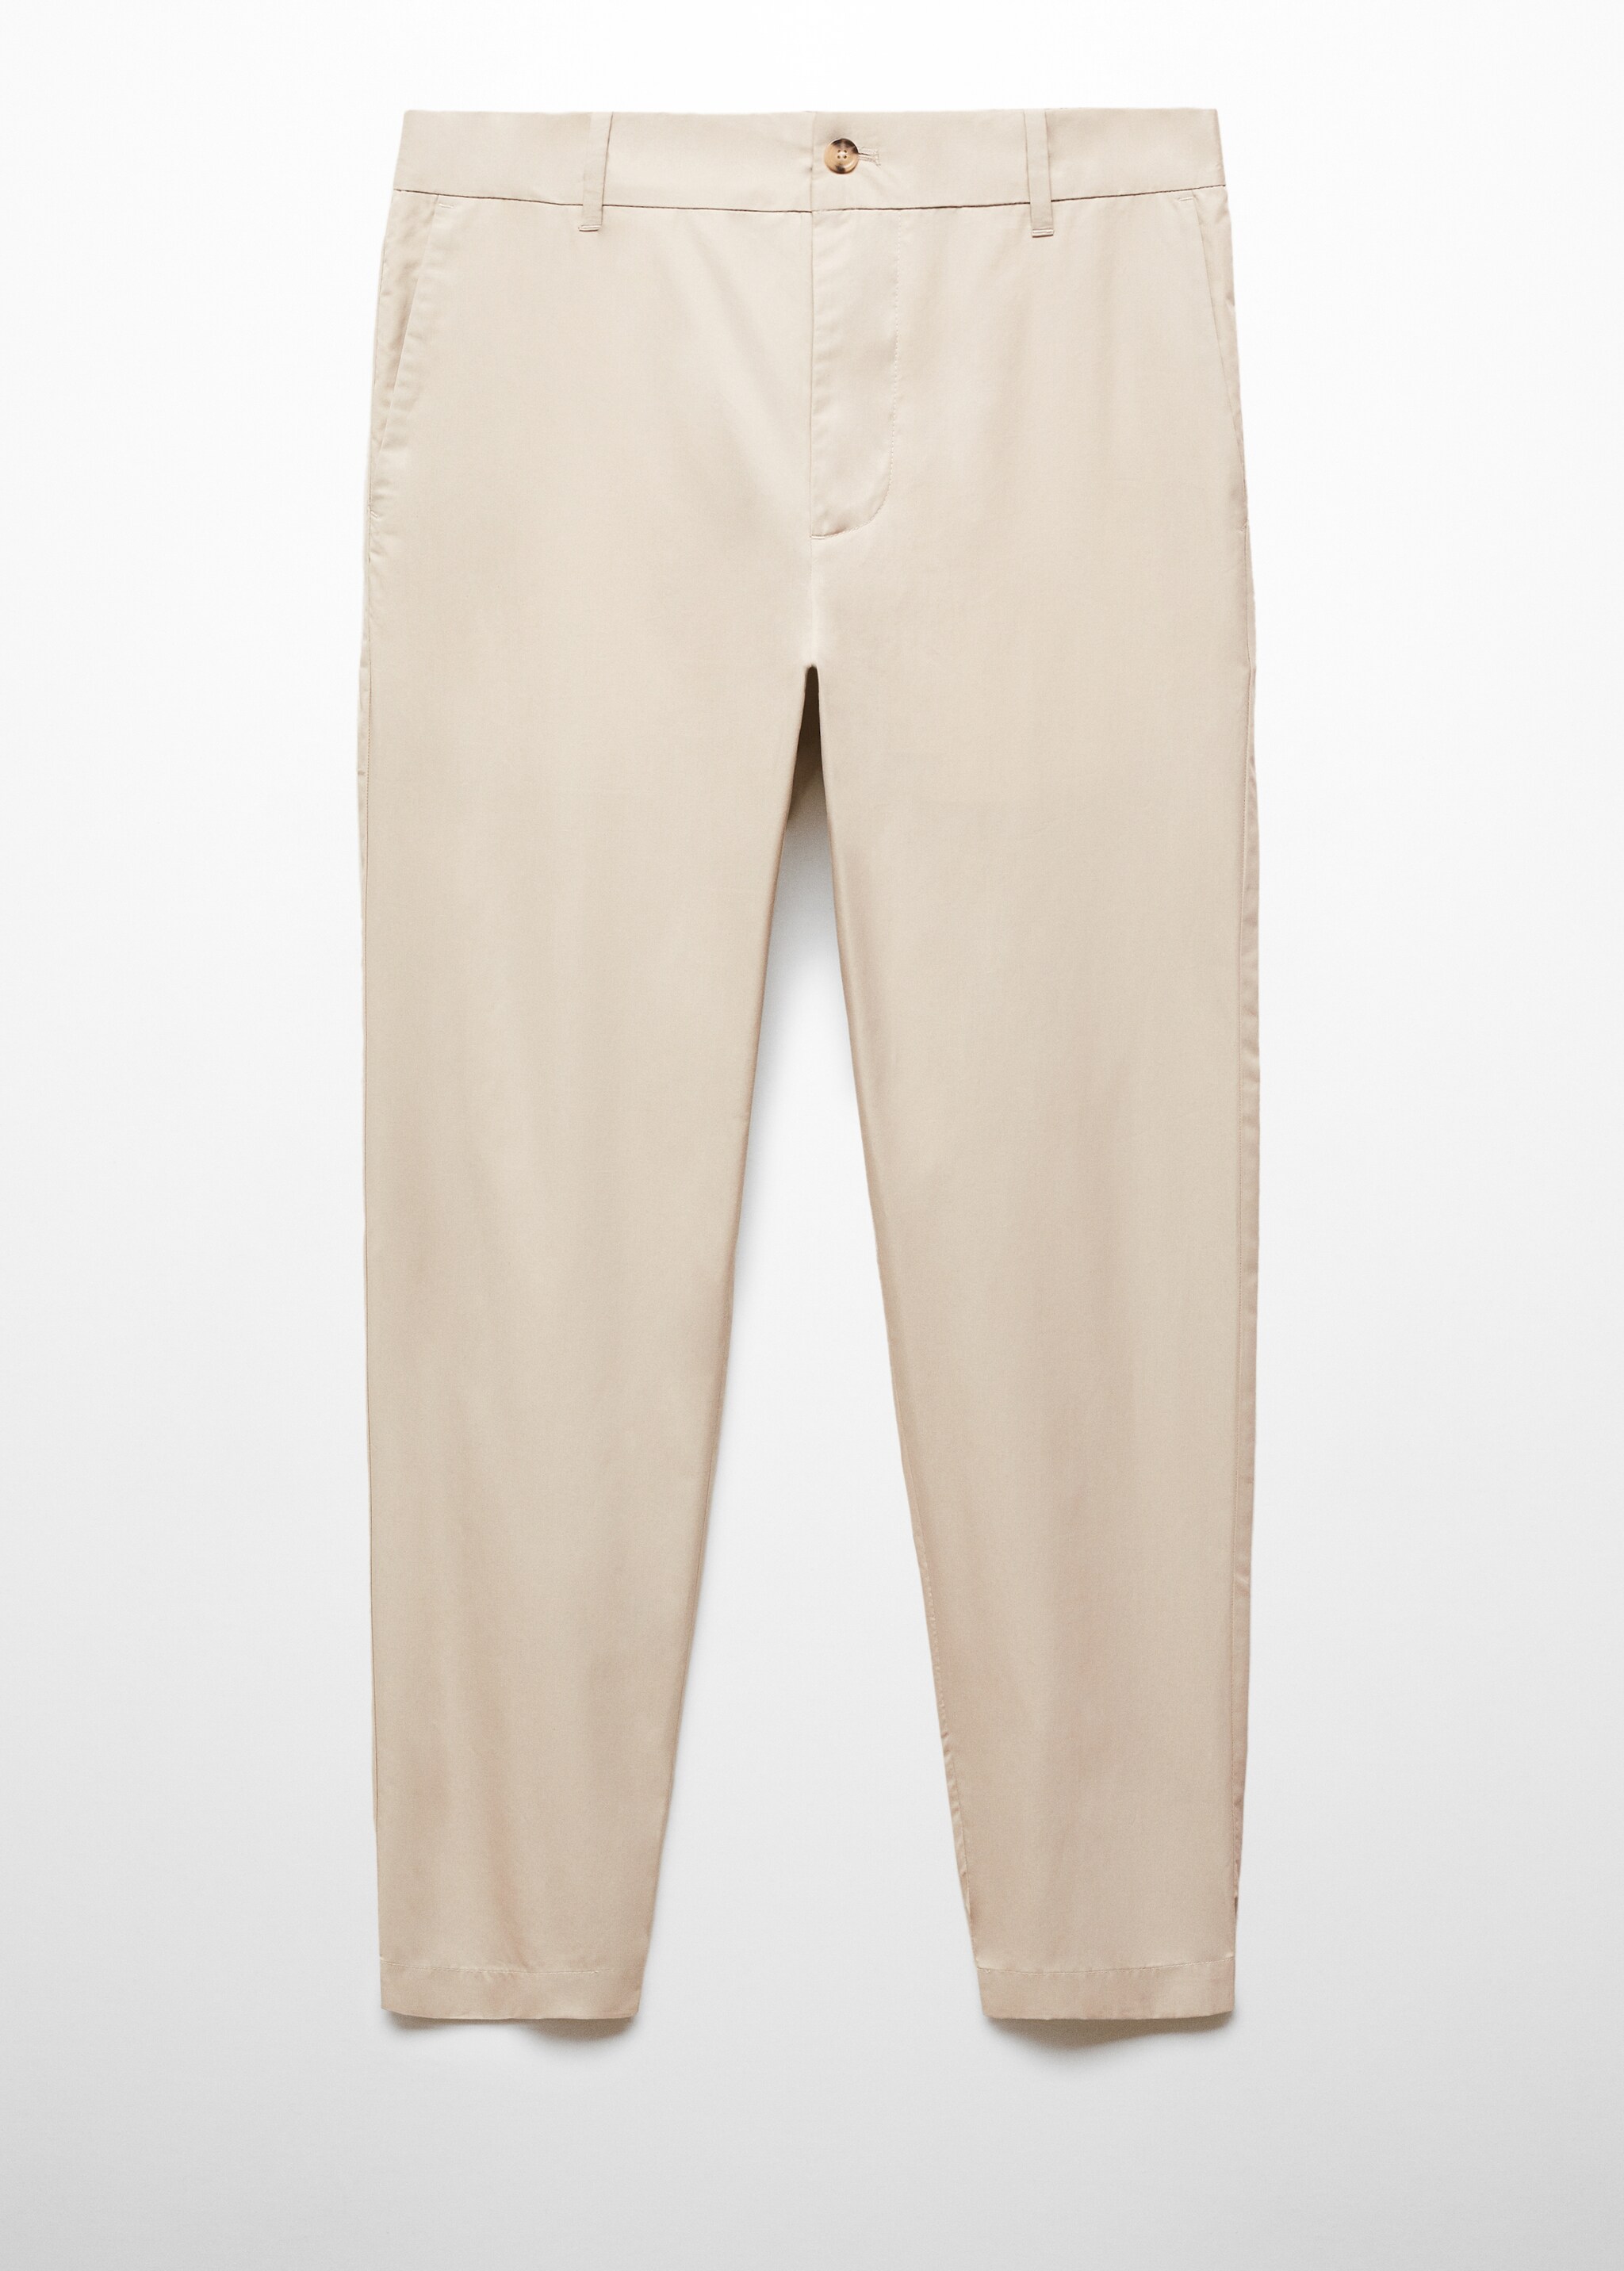 Pantalón 100% algodón slim fit - Artículo sin modelo